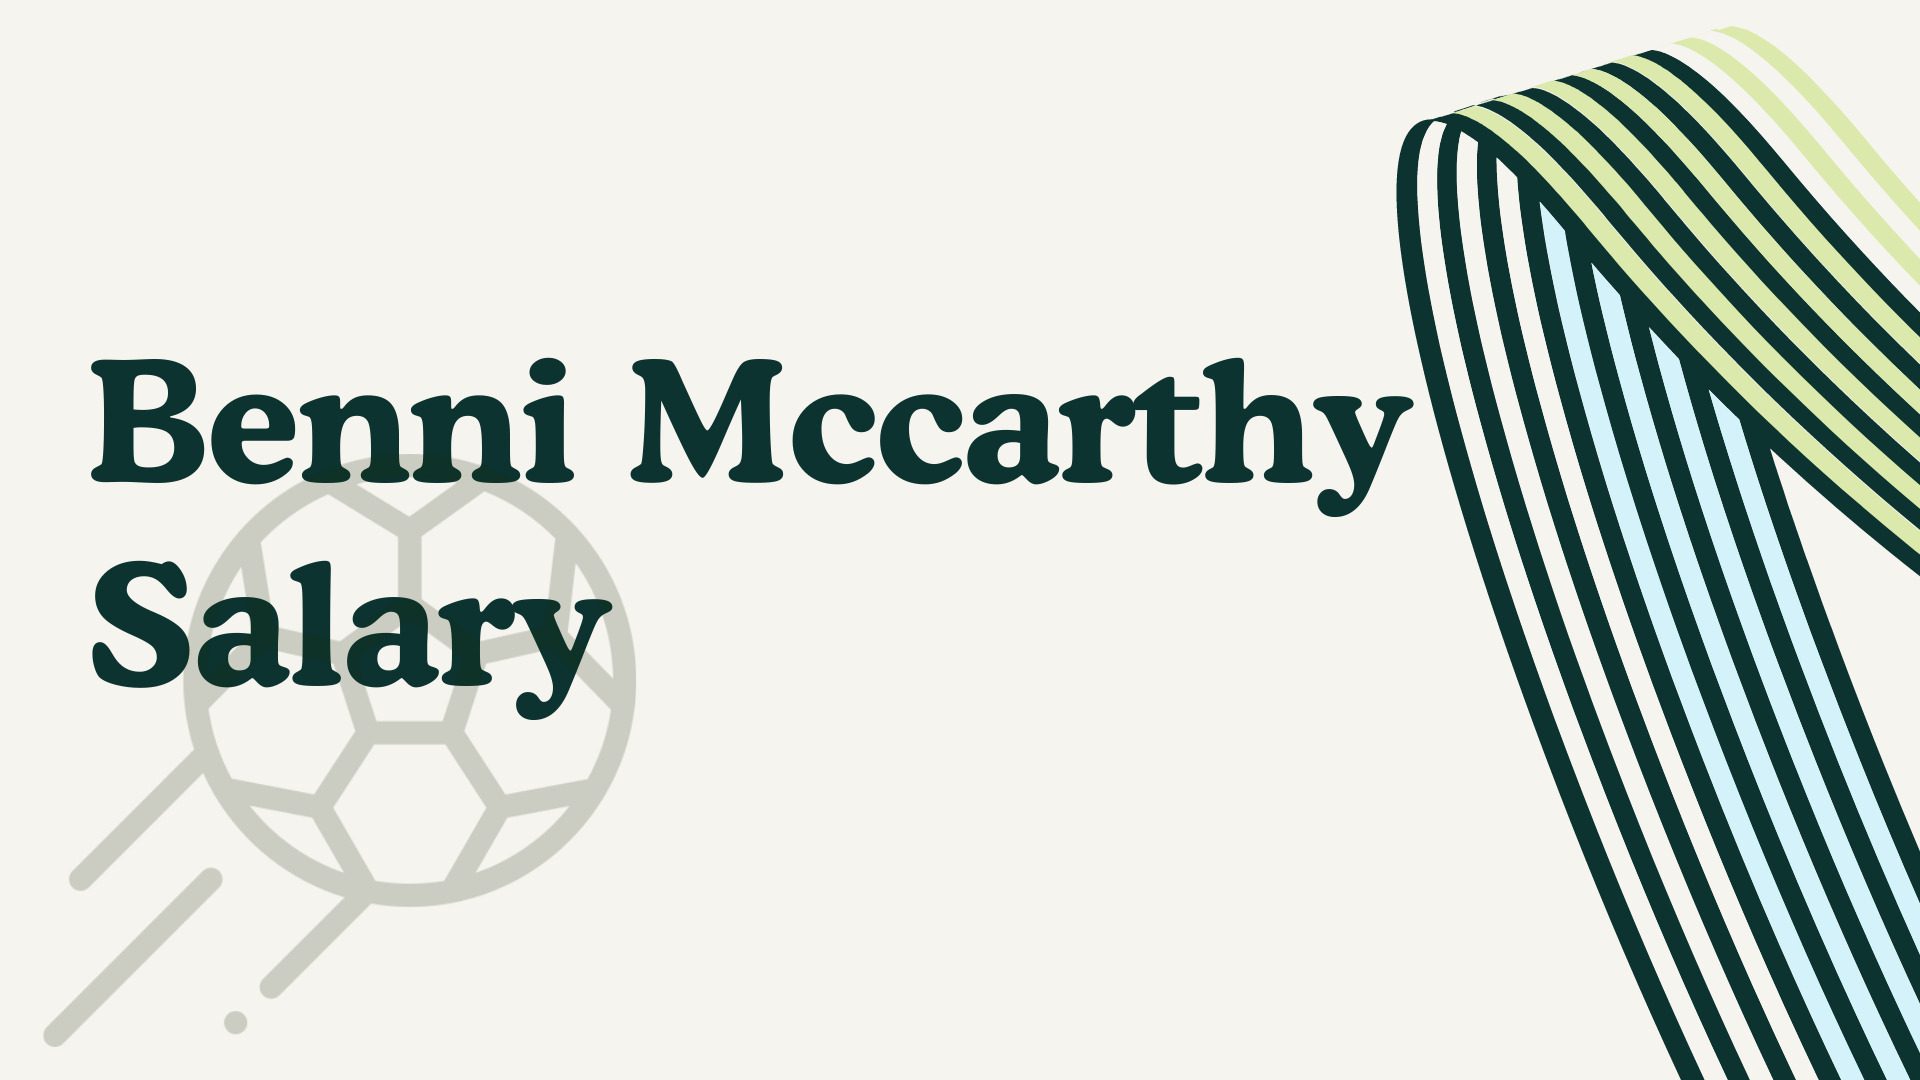 Benni Mccarthy Salary